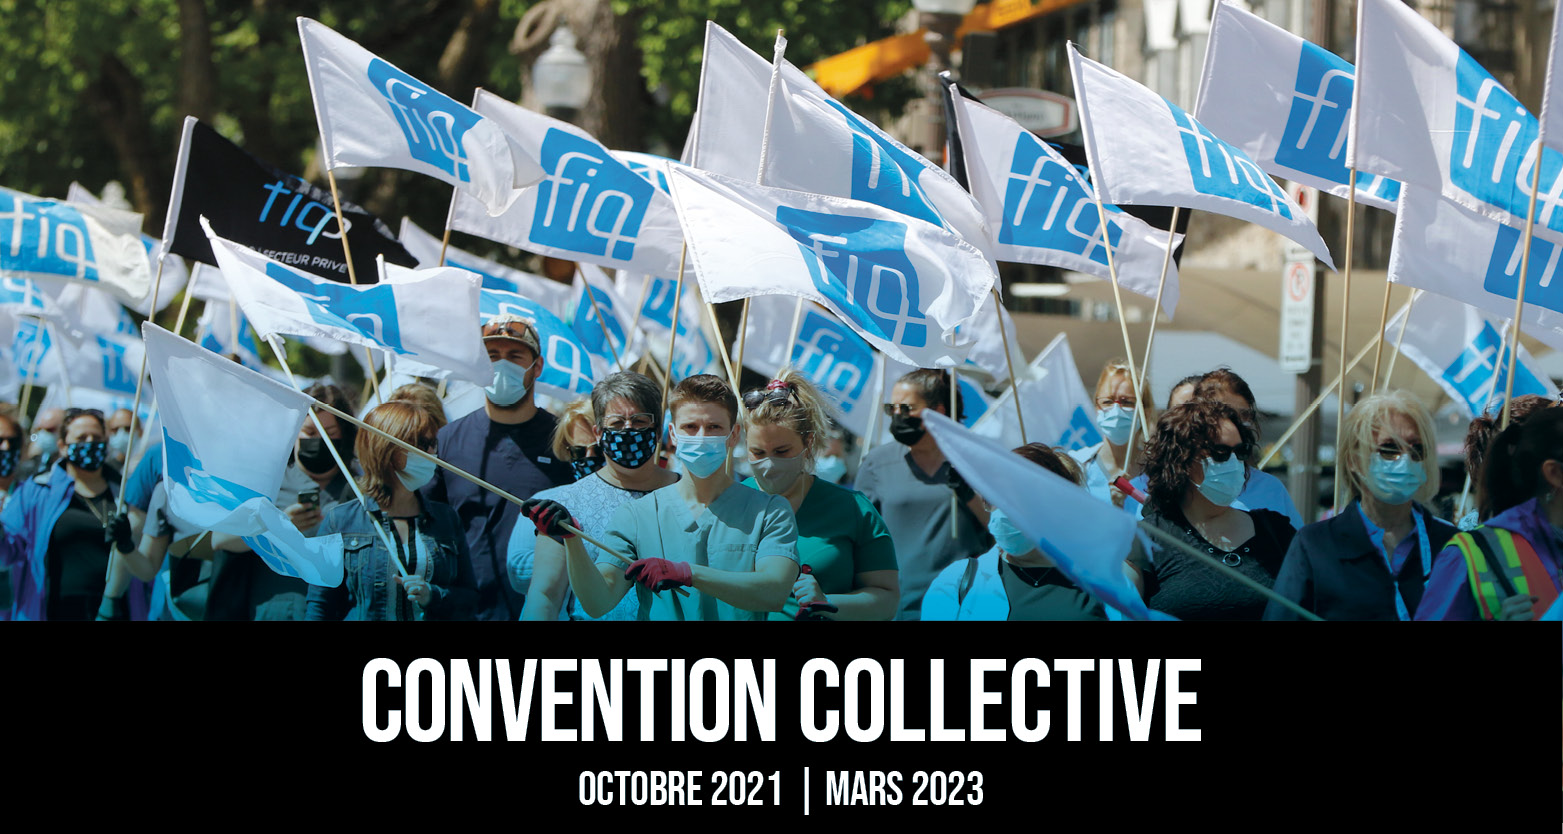 La convention collective 2021-2023 est signée